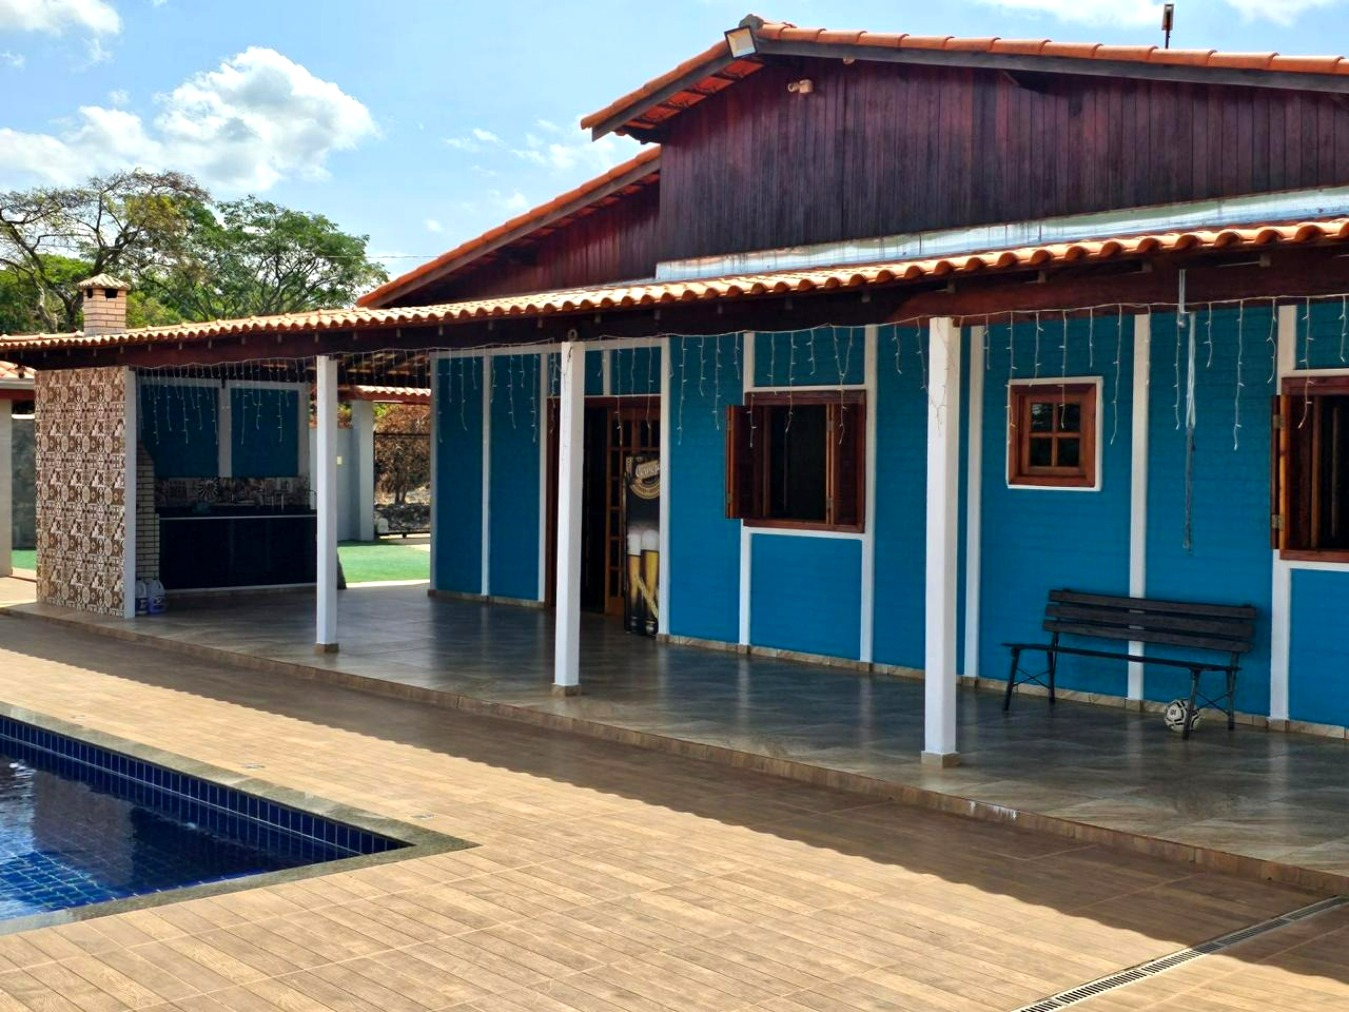 Chácara para venda com 3 suítes - Vila das Cachoeiras